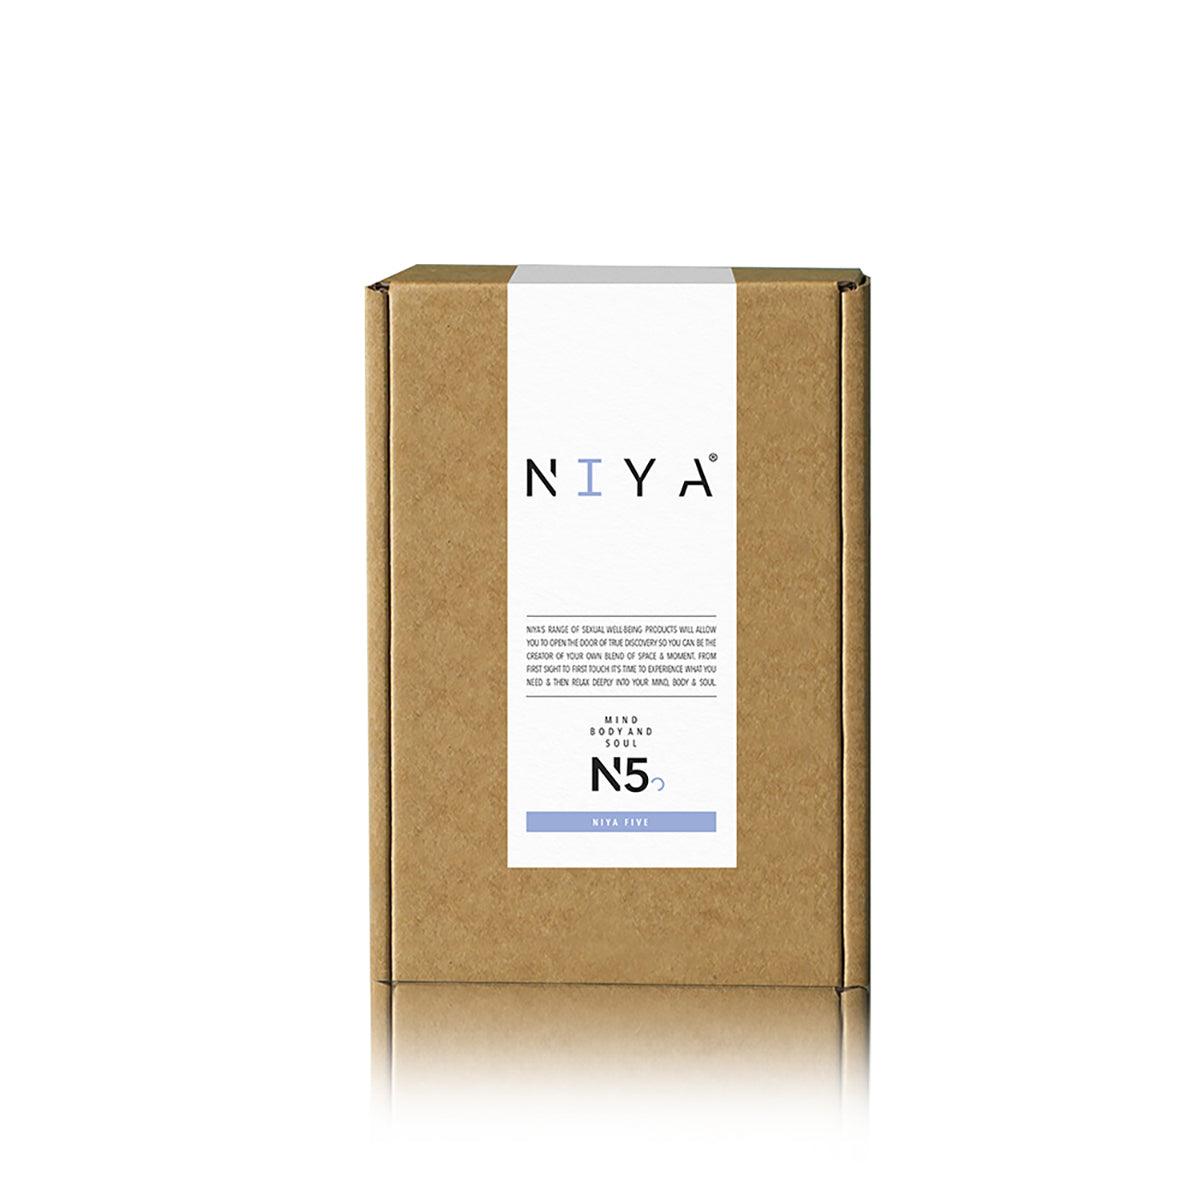 NIYA N5 Multi-Choice Intimate Massager by Rocks Off - shop enby